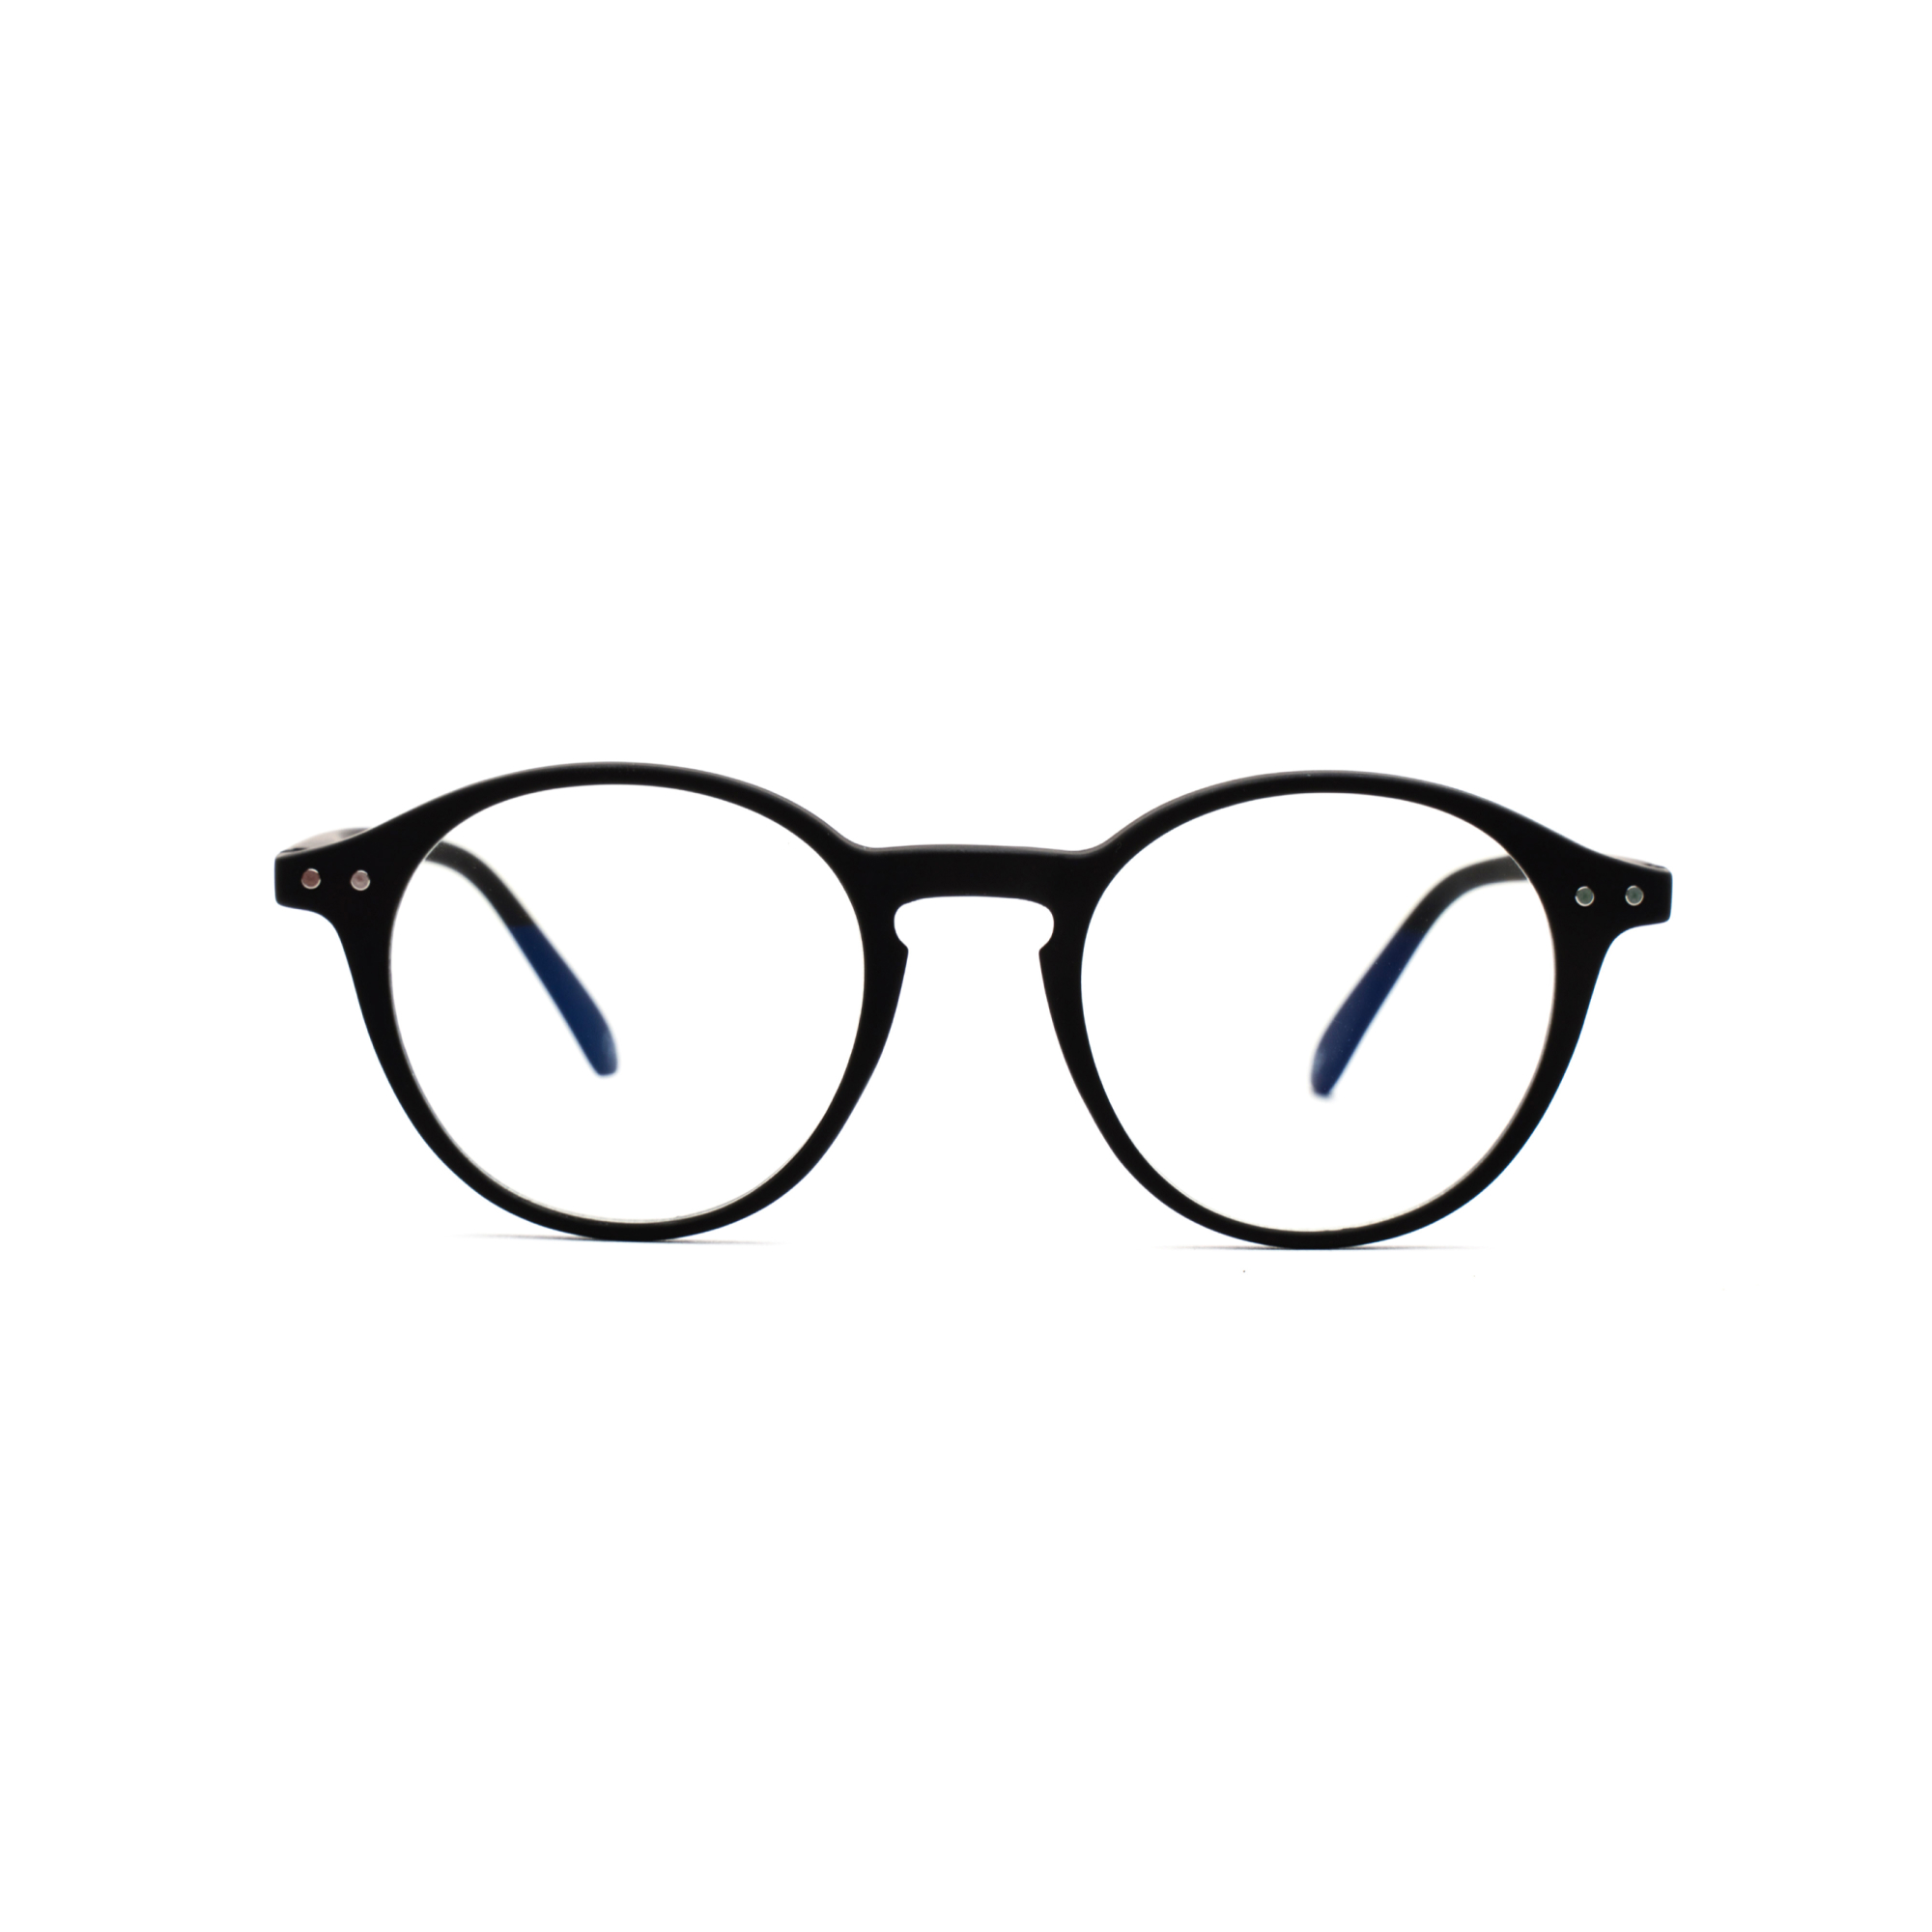 Men's reading glasses – Luca Ultimate m - Black